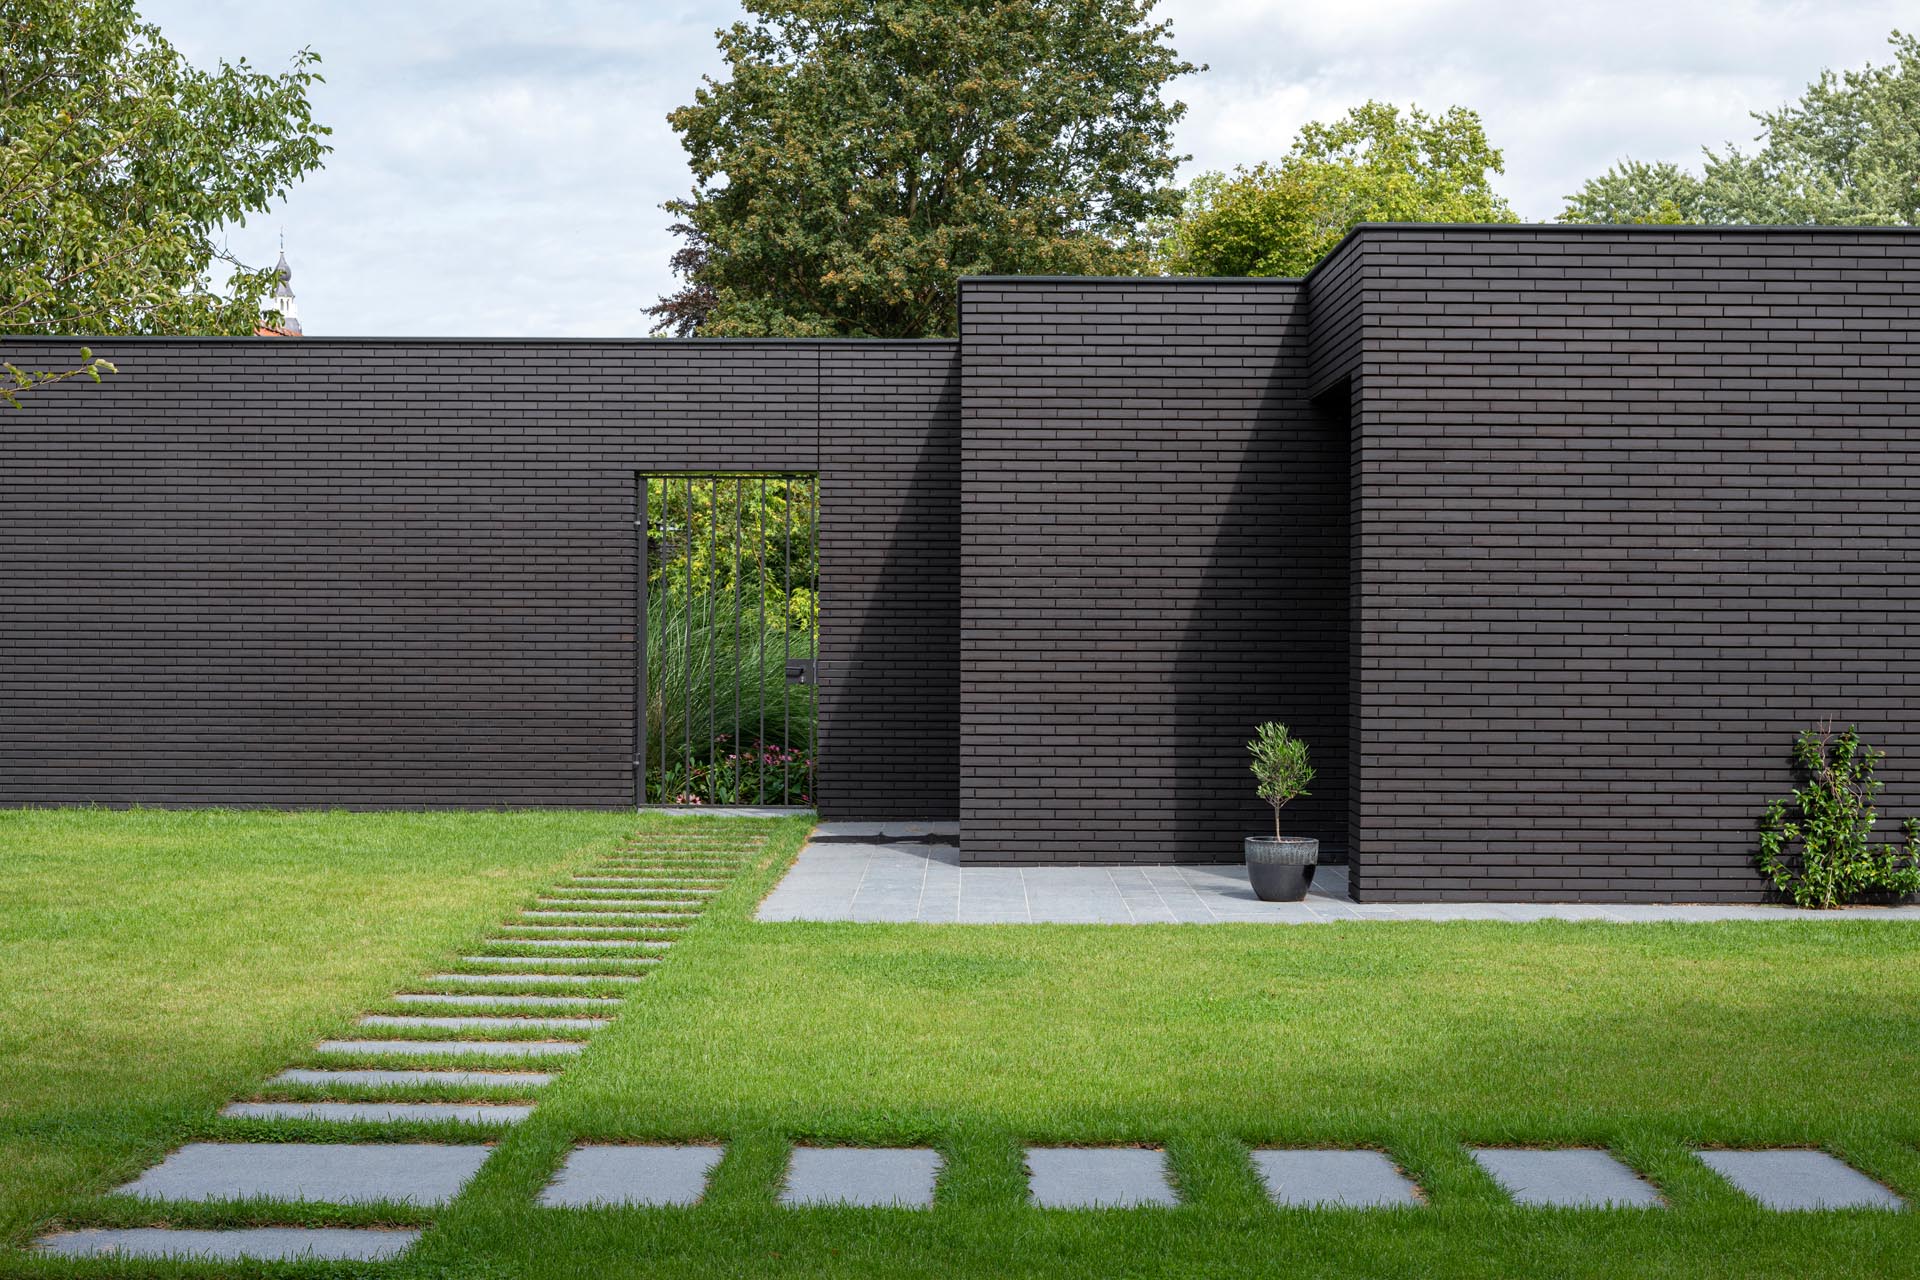 External Brick Wall Design Ideas